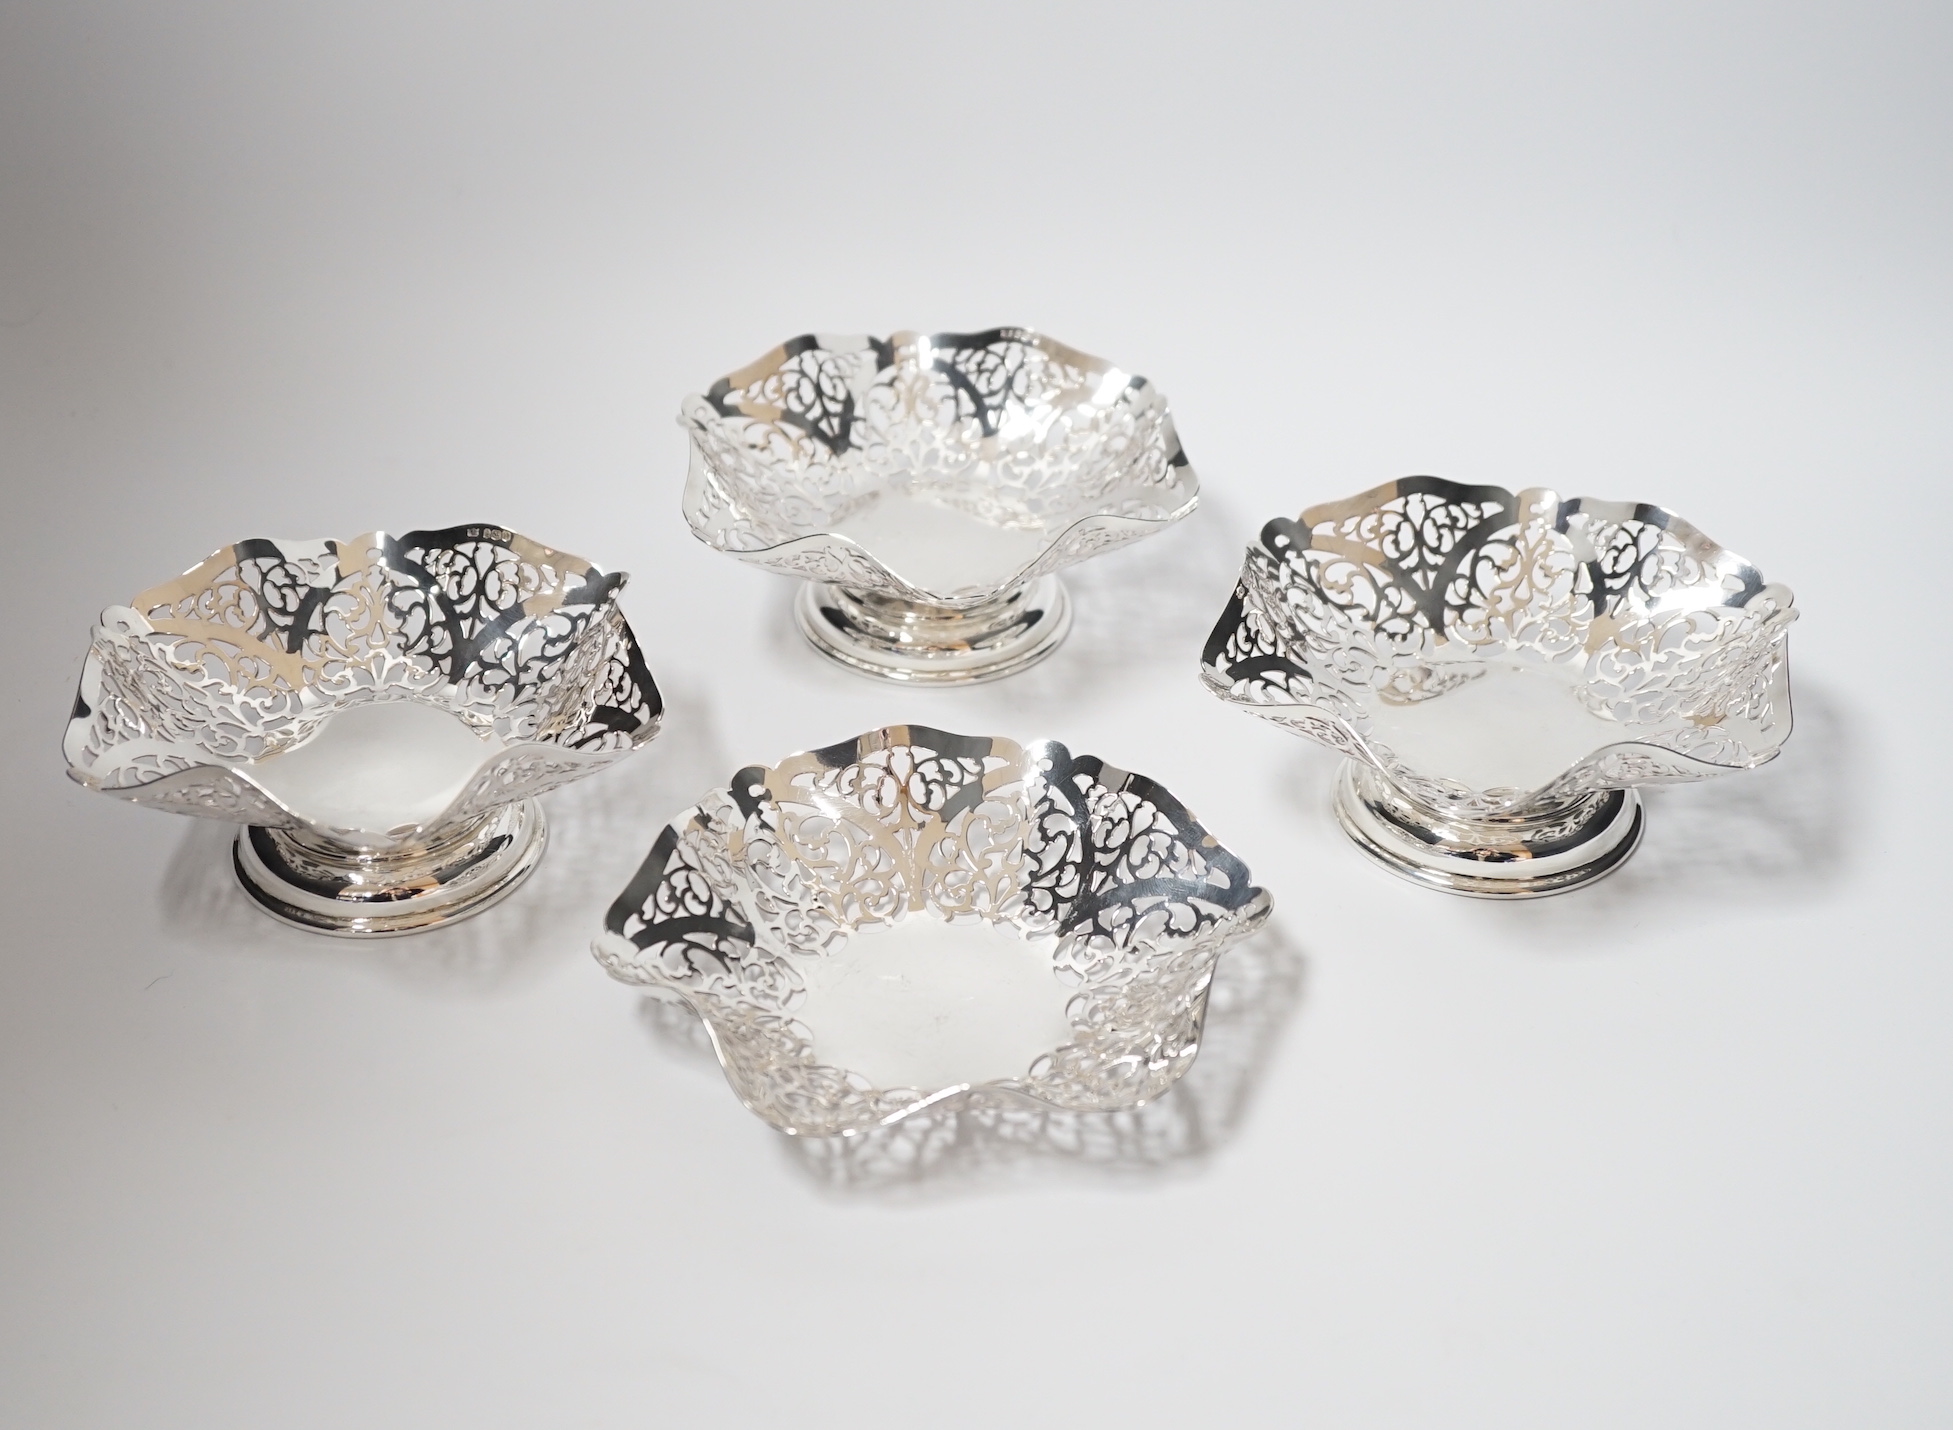 A set of three Elizabeth II pierced silver bonbon dishes, William Bush & Son, Sheffield, 1962, 14.2cm and one other similar silver shallow dish, 16oz.